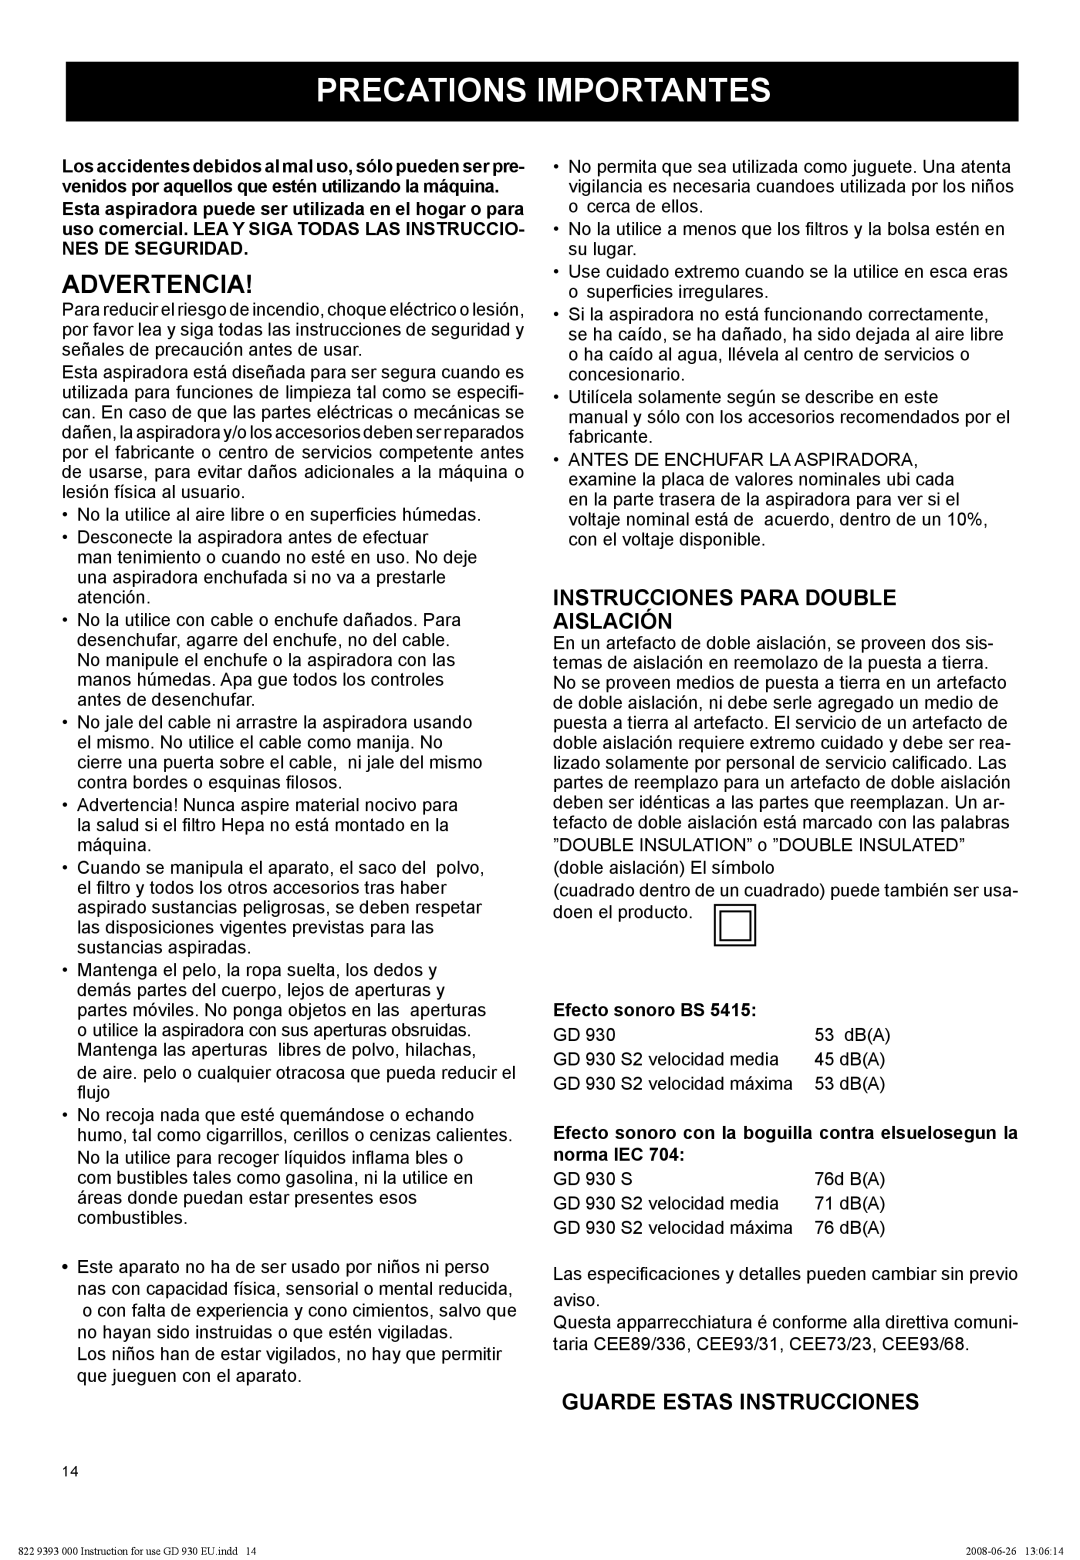 Nilfisk-Advance America GD 930S2 manual Precations Importantes, Advertencia, Instrucciones Para Double Aislación 